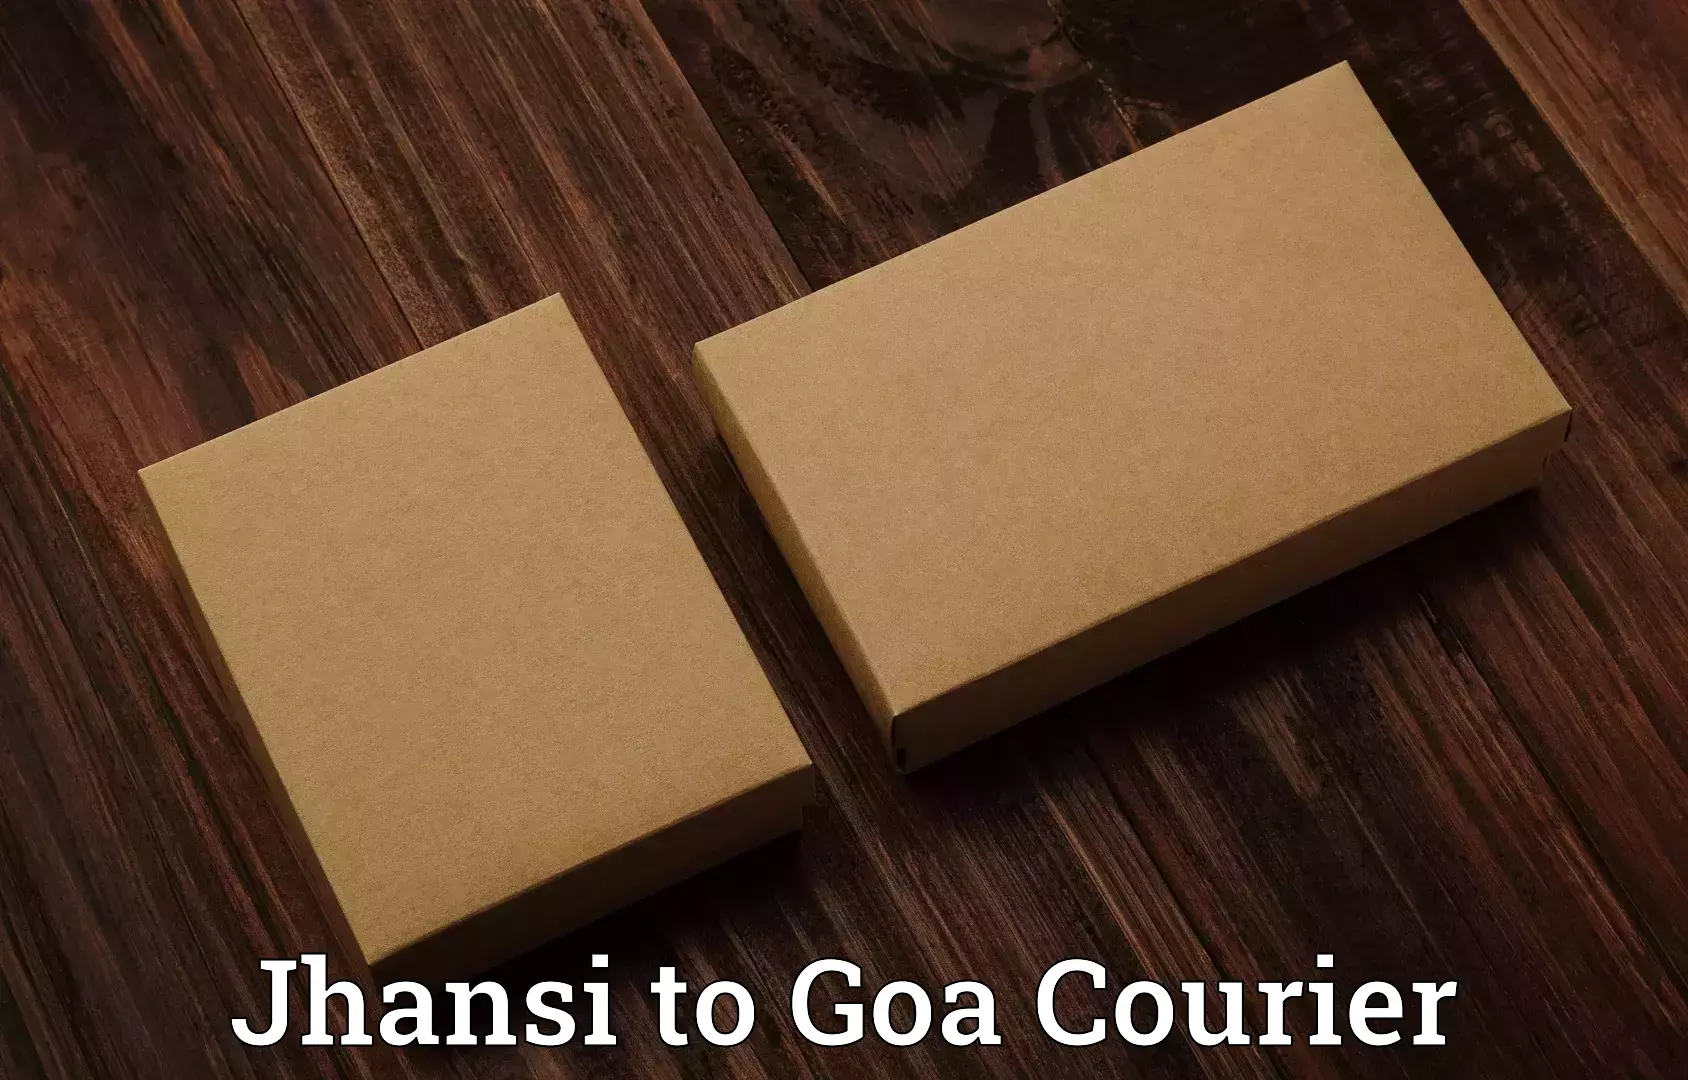 Door-to-door baggage service Jhansi to IIT Goa